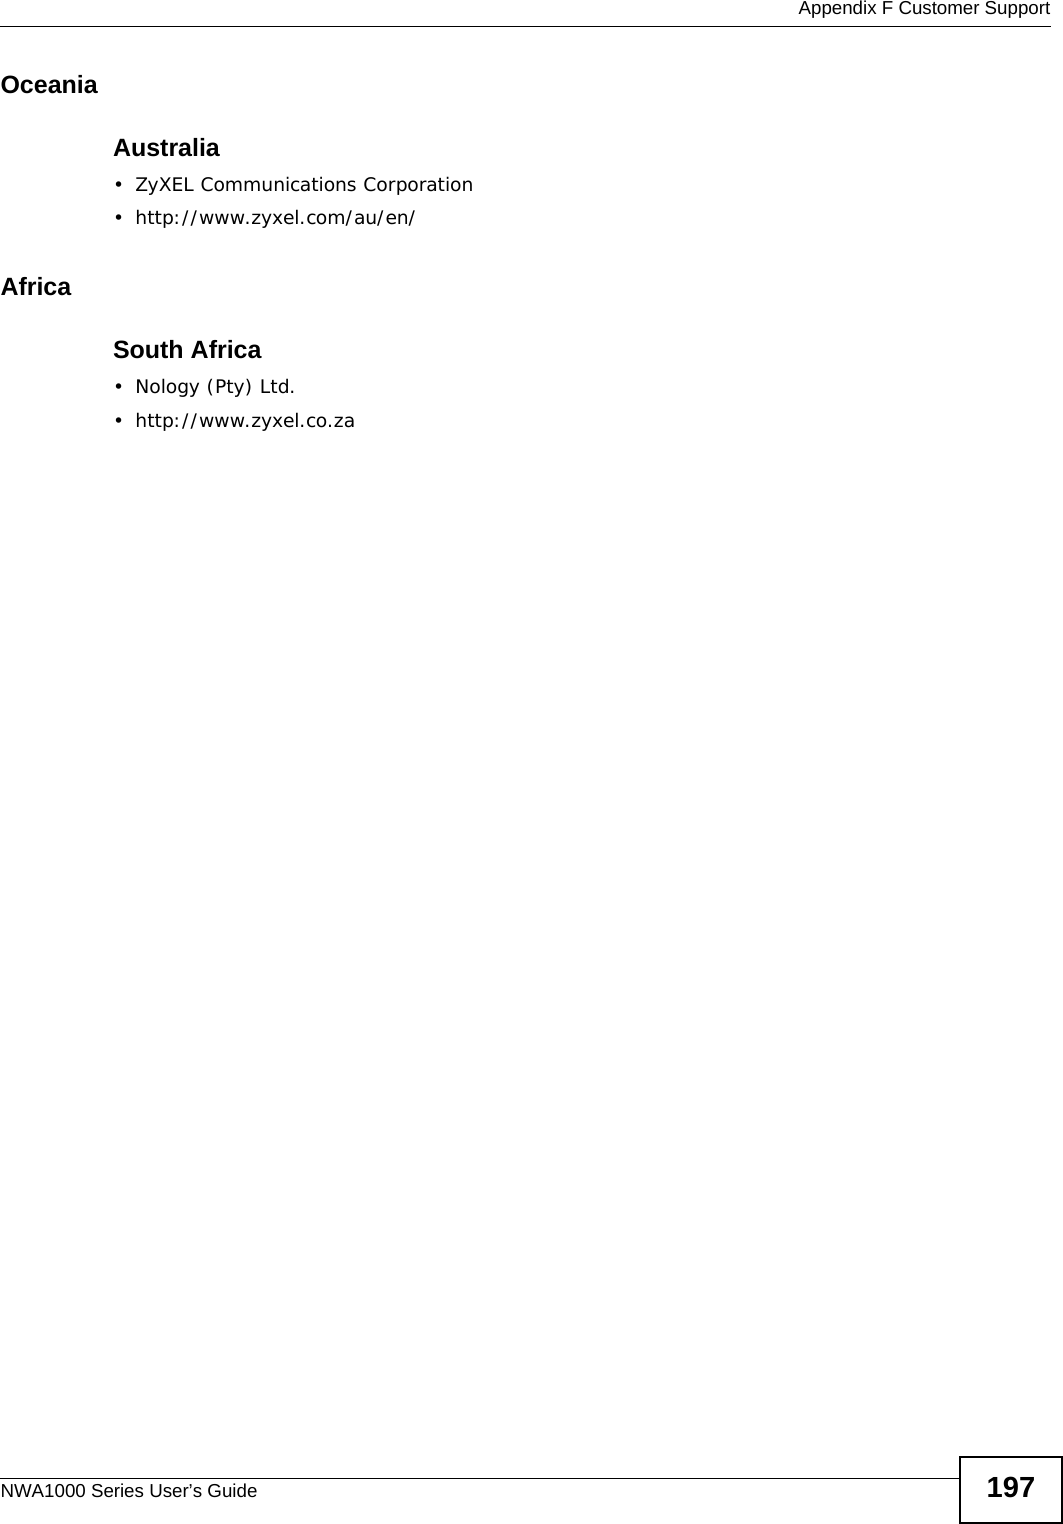  Appendix F Customer SupportNWA1000 Series User’s Guide 197OceaniaAustralia• ZyXEL Communications Corporation• http://www.zyxel.com/au/en/AfricaSouth Africa• Nology (Pty) Ltd.• http://www.zyxel.co.za